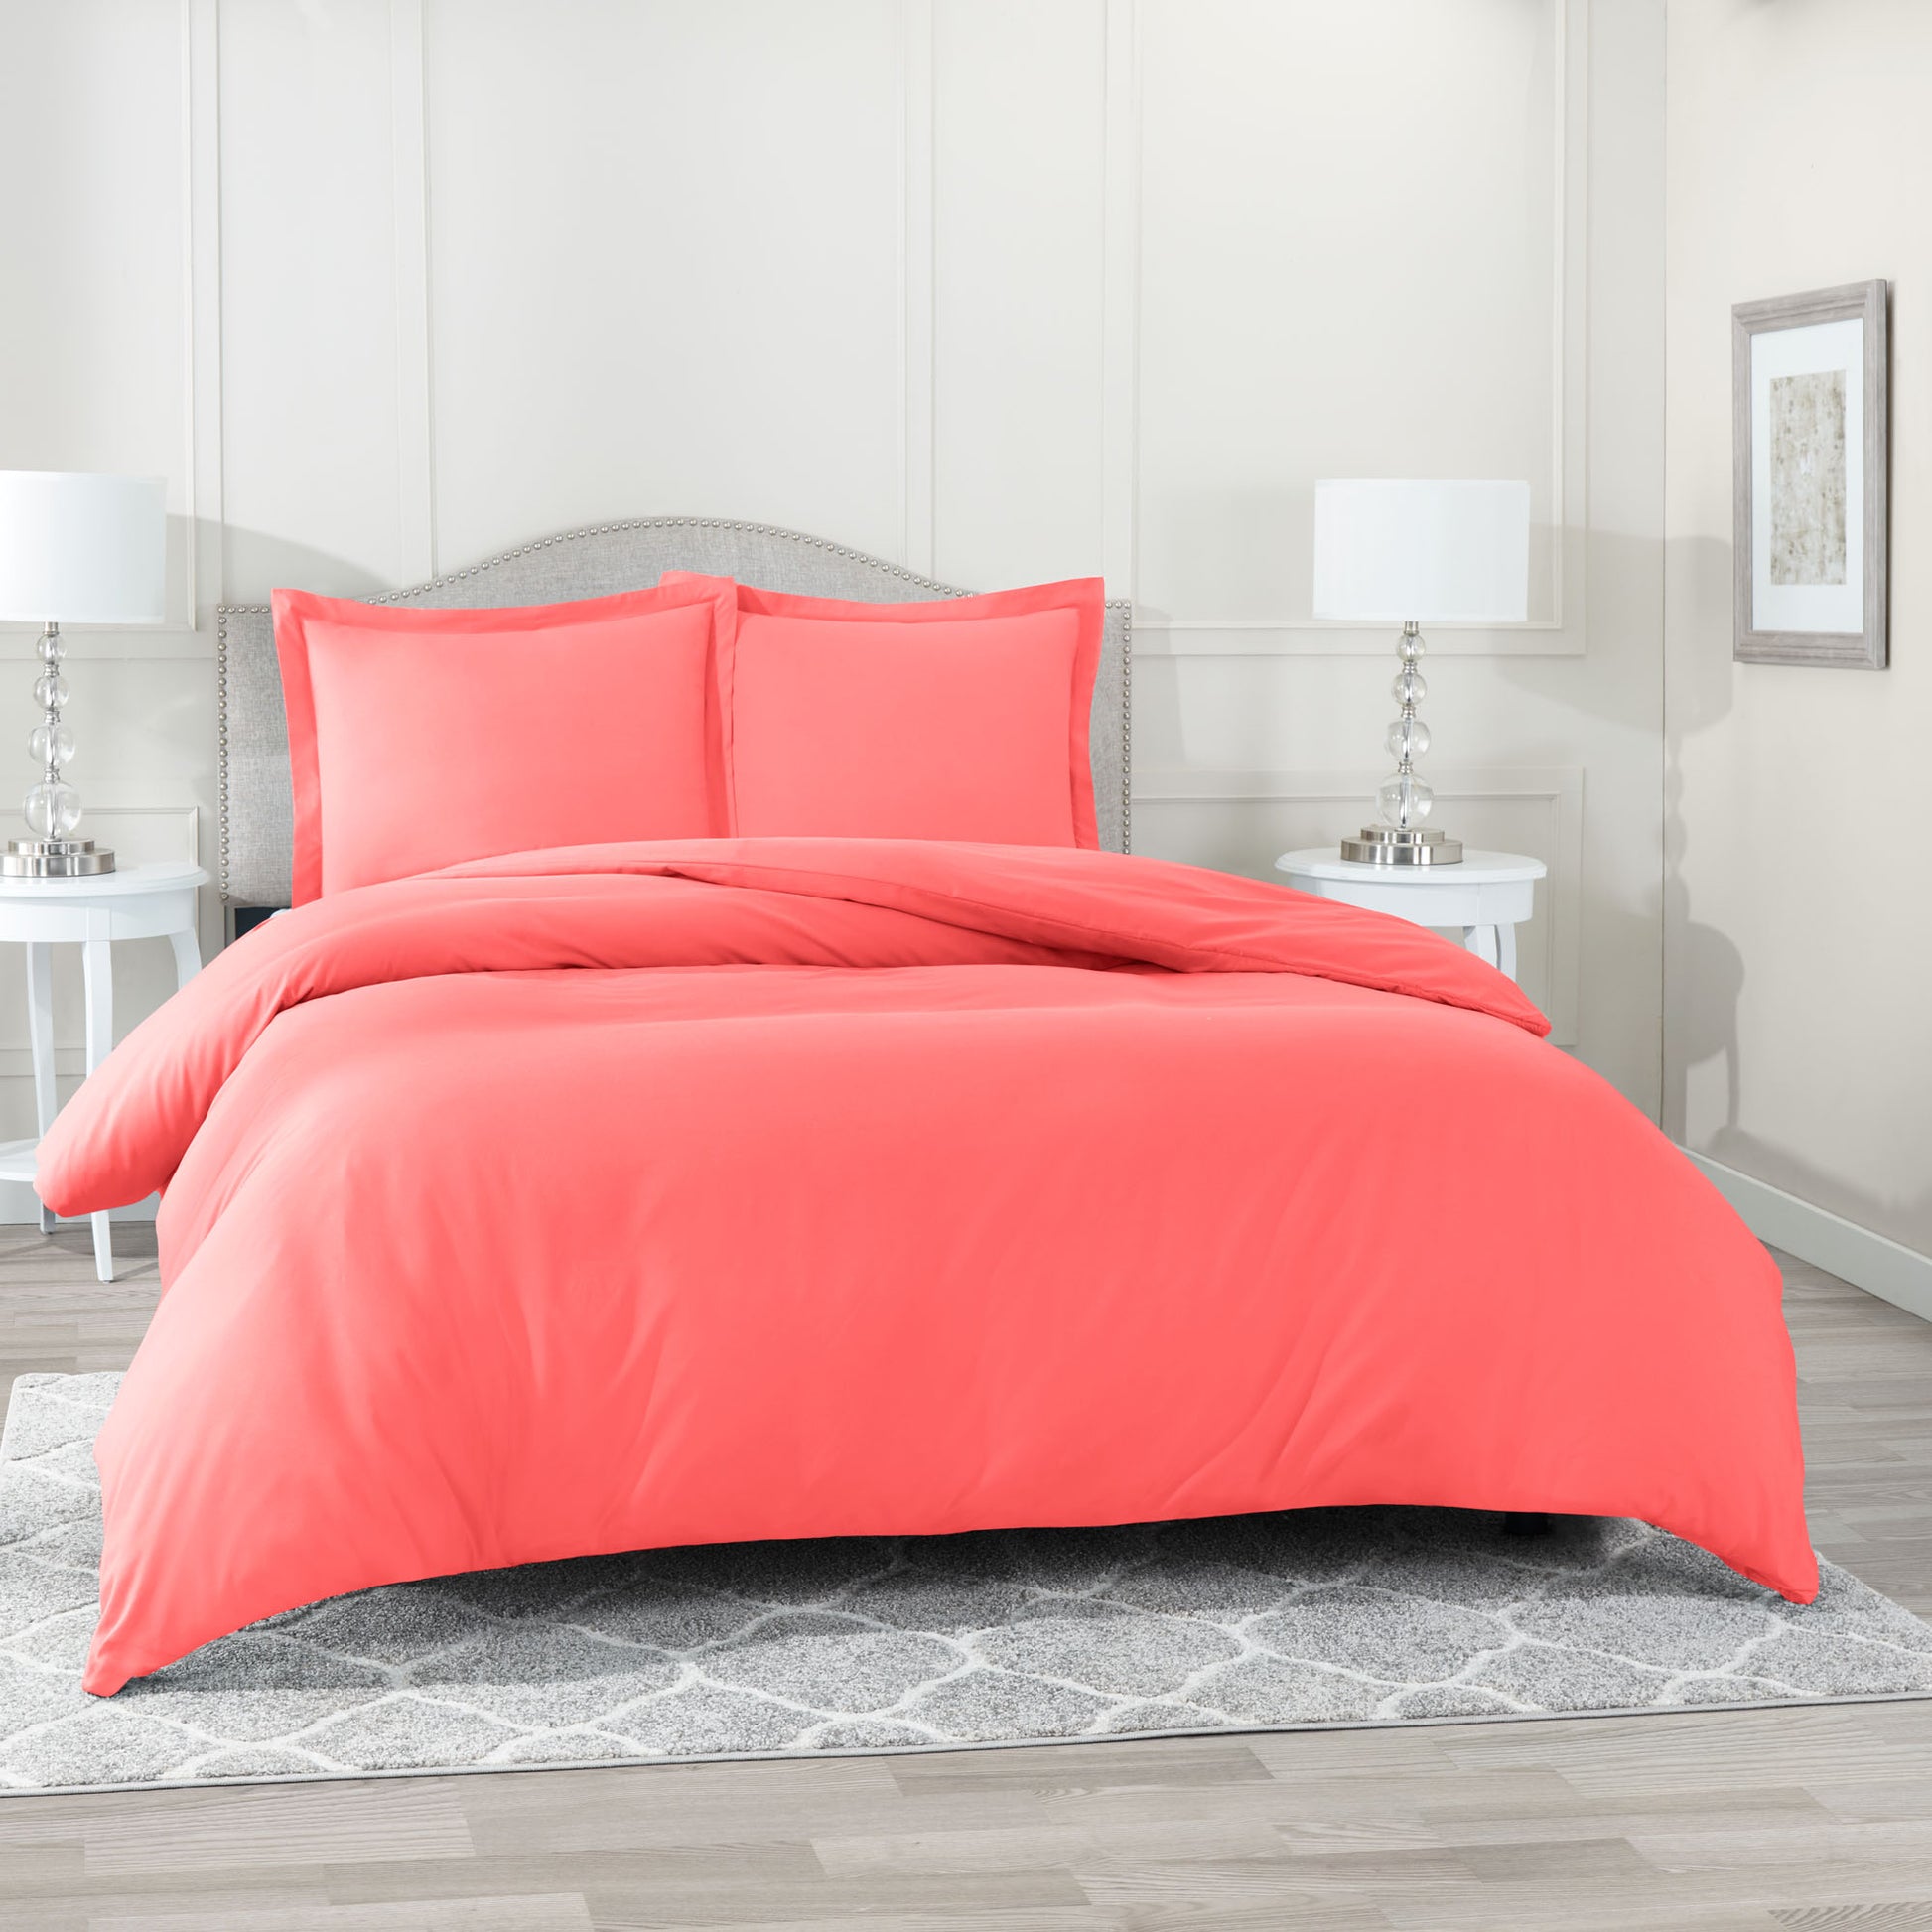 https://www.cozyarray.com/cdn/shop/products/SANDERS-7178-BEDSETS-Coral-Pink-Duvet-Lifestyle.jpg?v=1607009445&width=1946